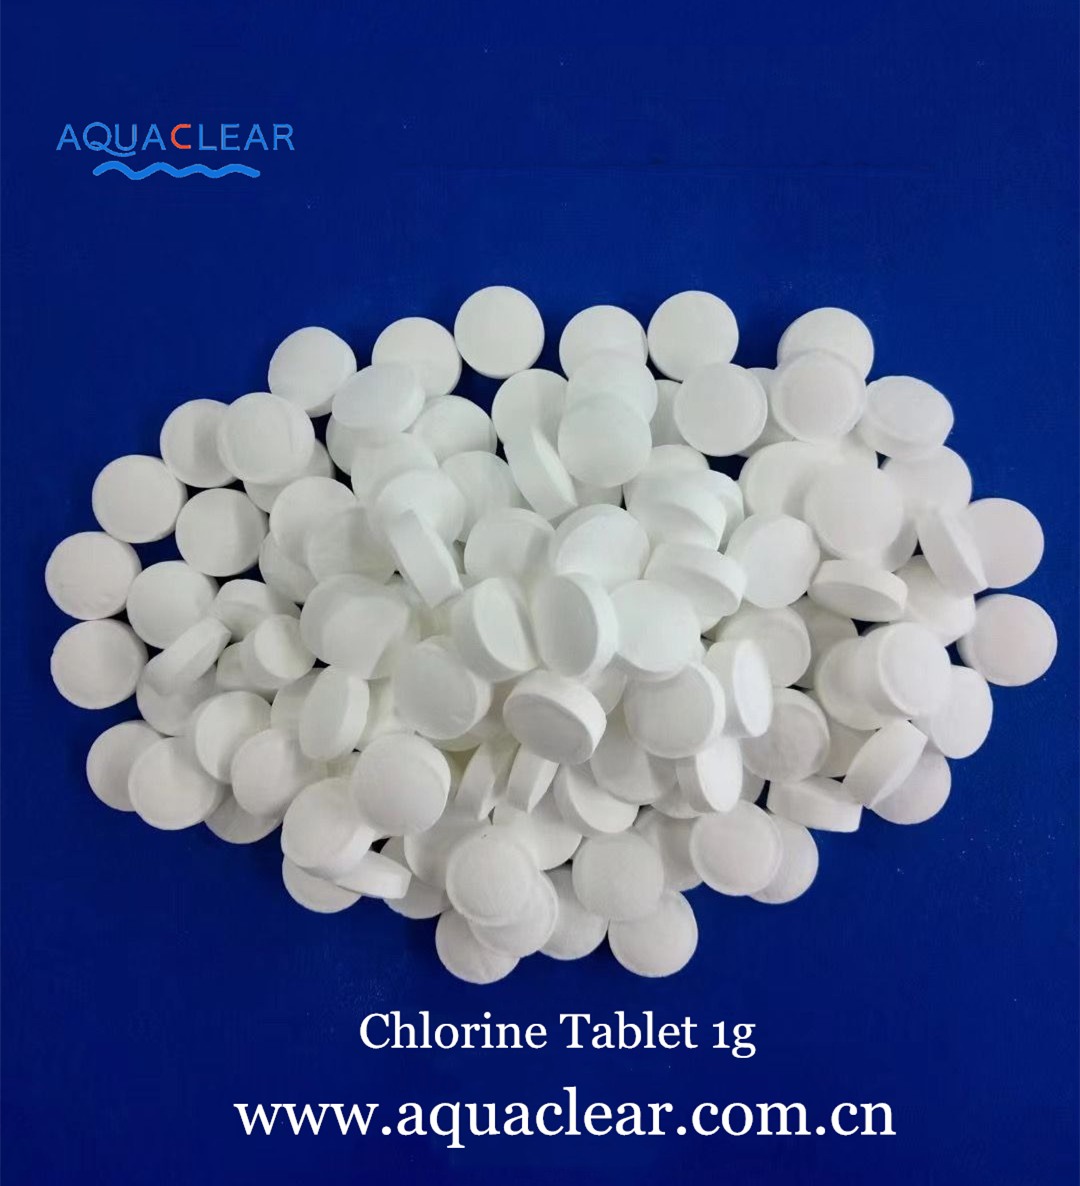 Chlorine Tablet 1g.jpg